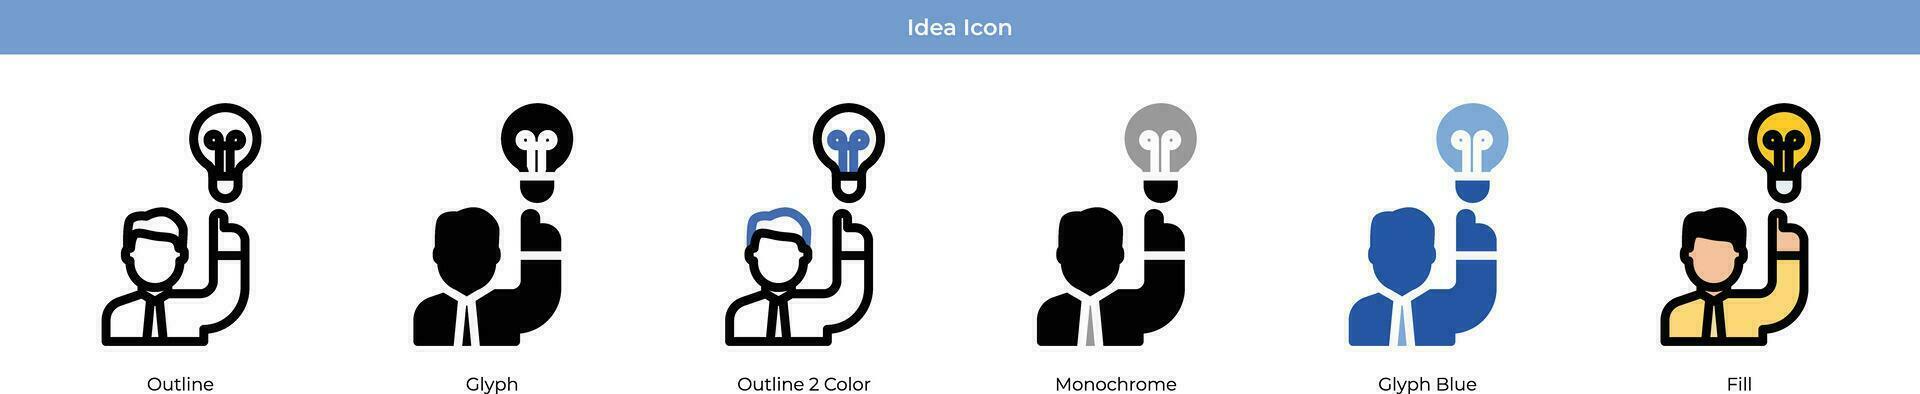 idee icon set vector